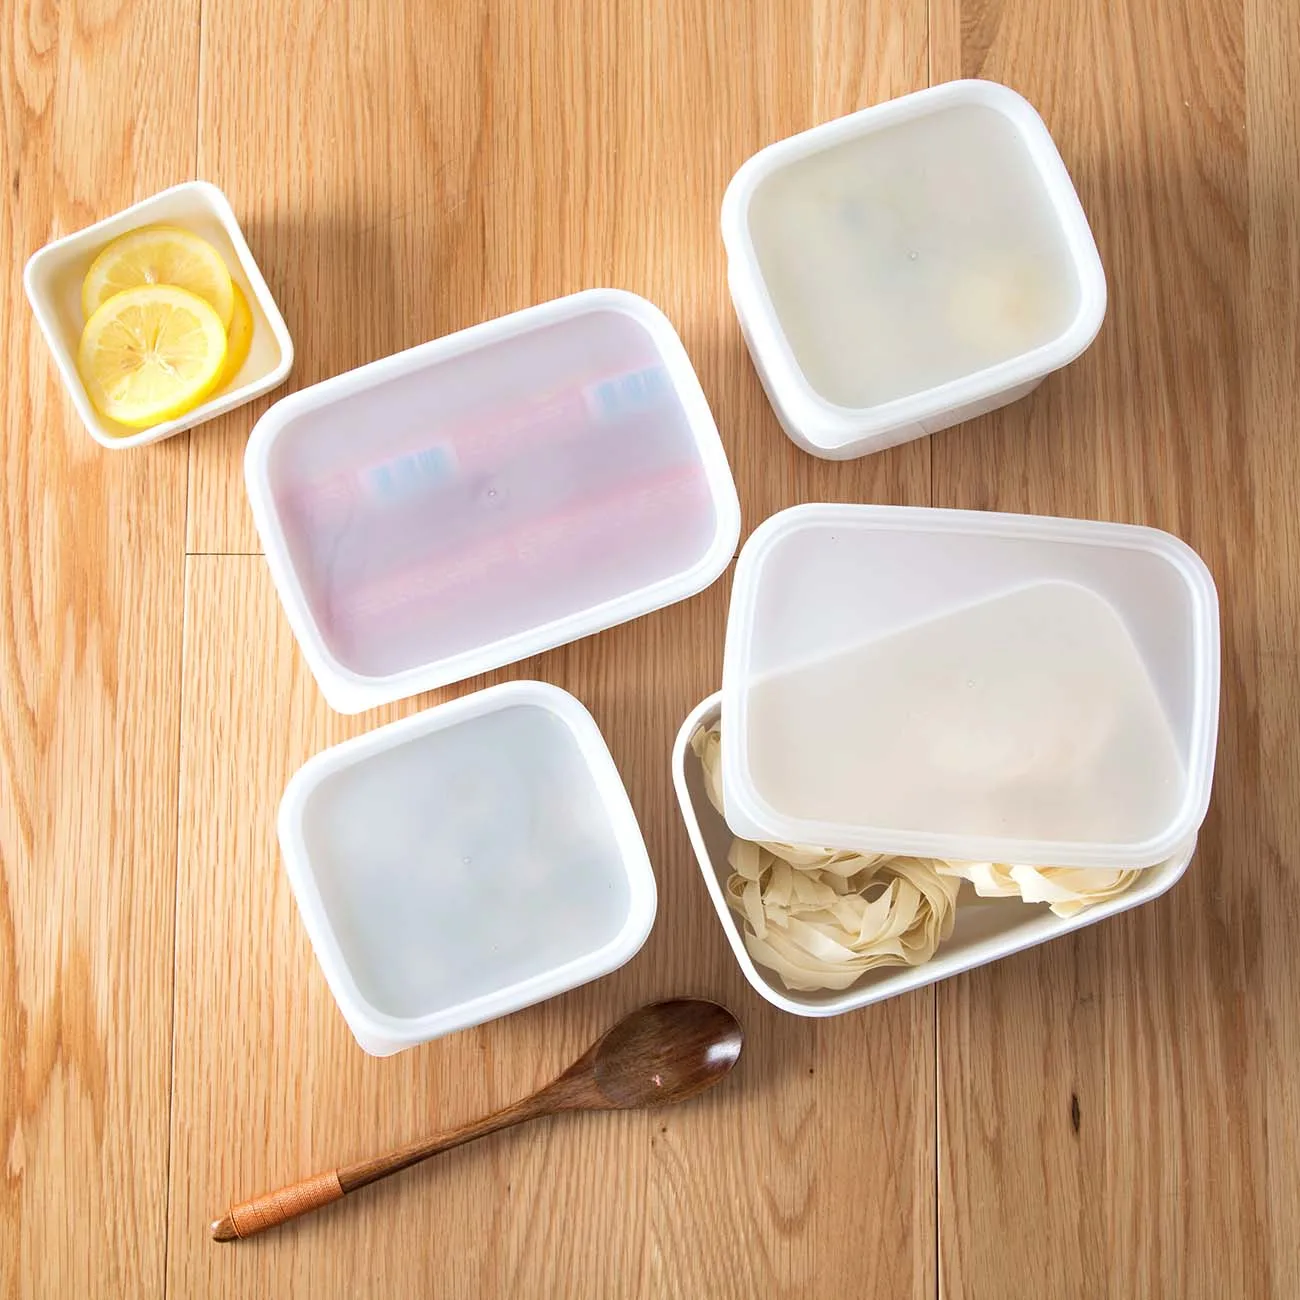 1 шт. кухонные контейнеры контейнер для хранения продуктов Ланч-бокс органайзер для холодильника Bento коробки для хранения продуктов пластиковый чехол